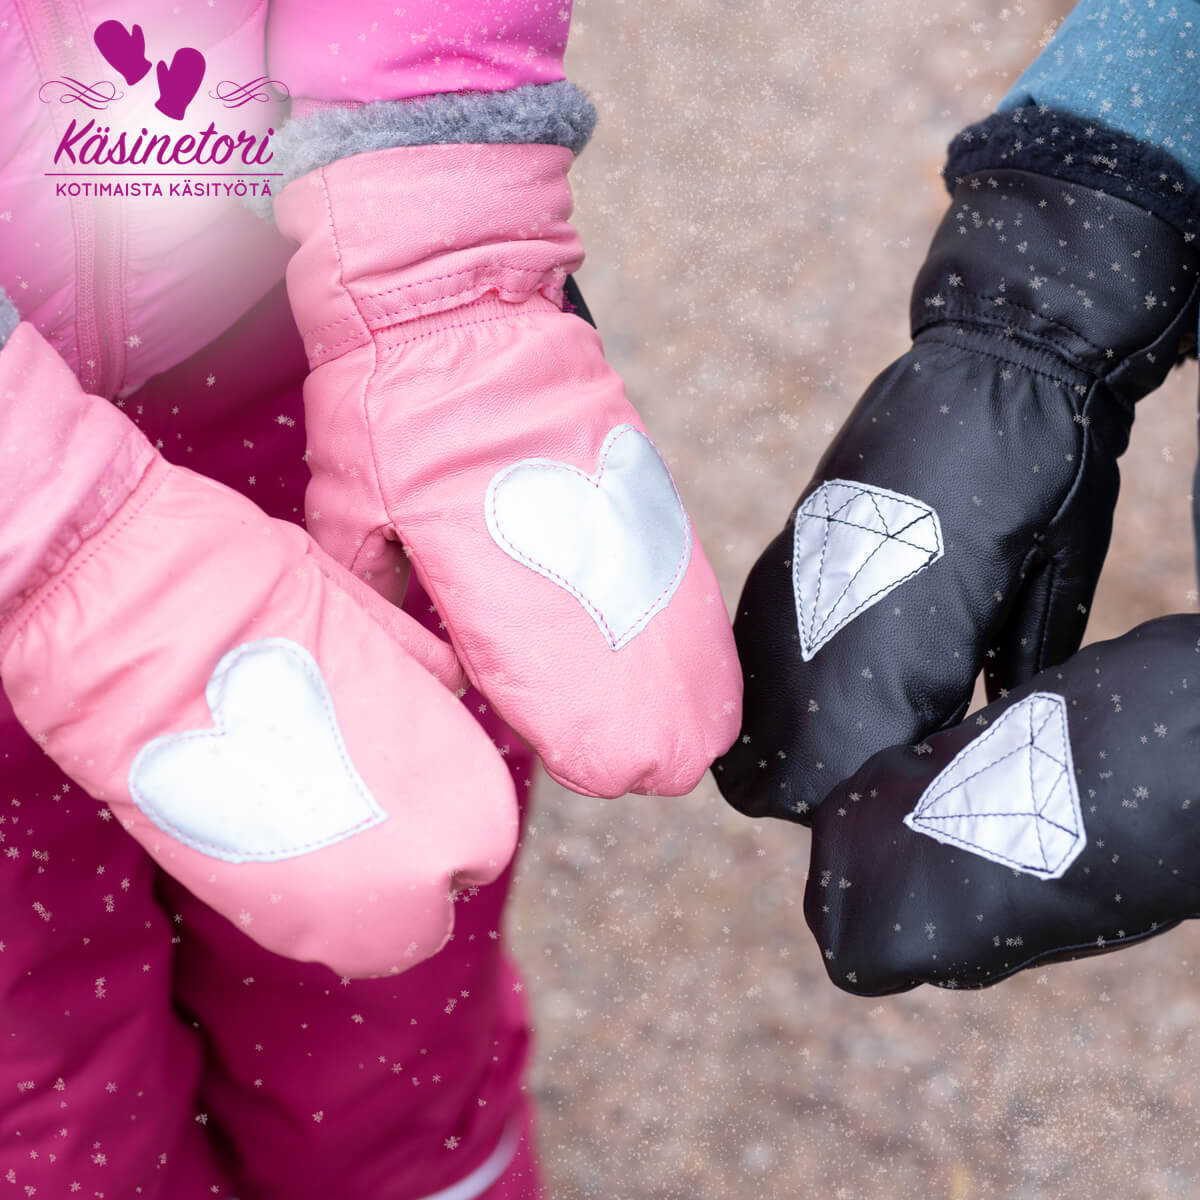 Talvihanskat lapselle - Heijastavat nahkarukkaset lapsille - pinkki sydän -  Käsinetori - Kotimainen käsinevalmistaja